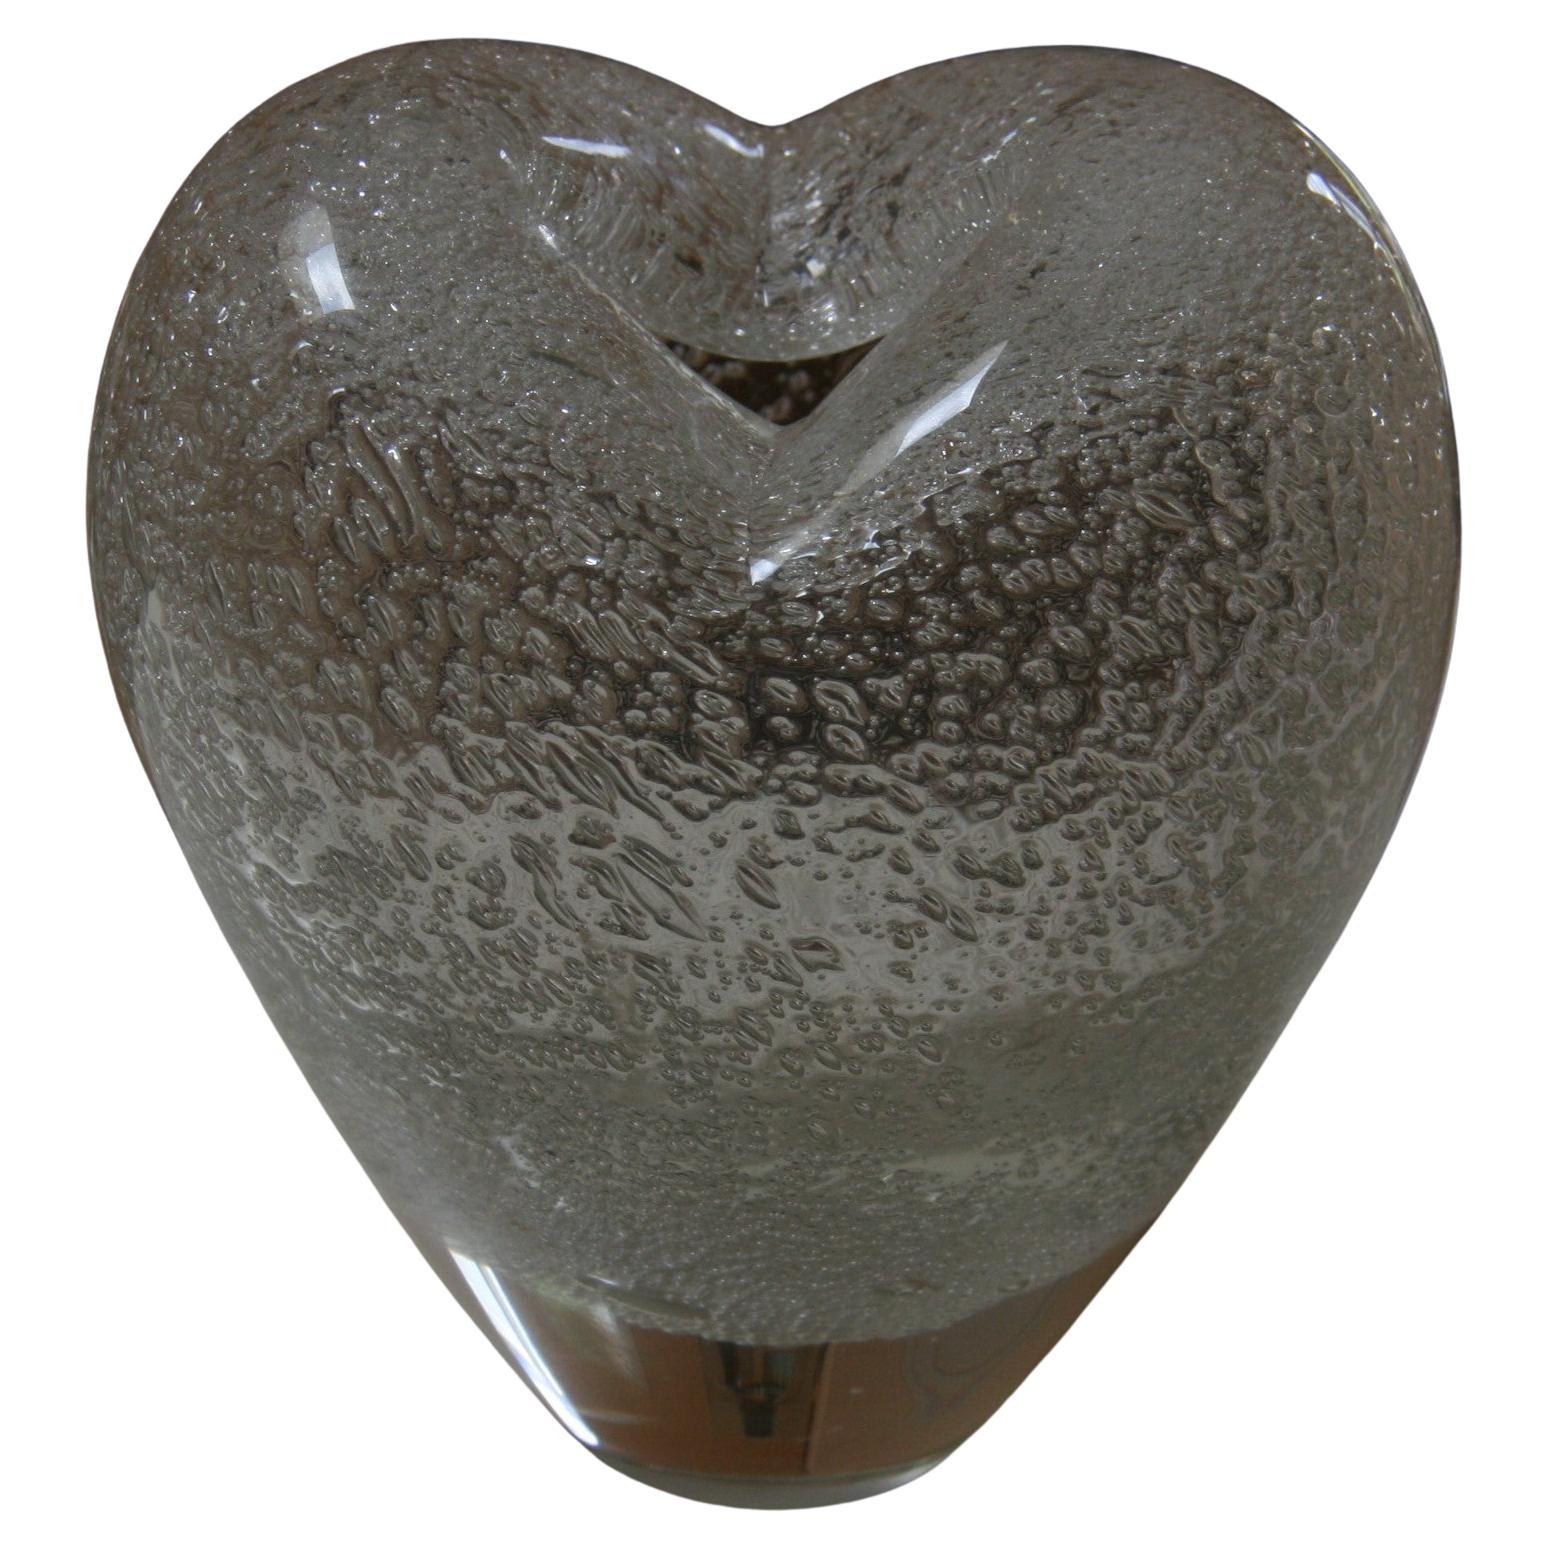  Seguso Murano Vase/Skulptur in Herzform